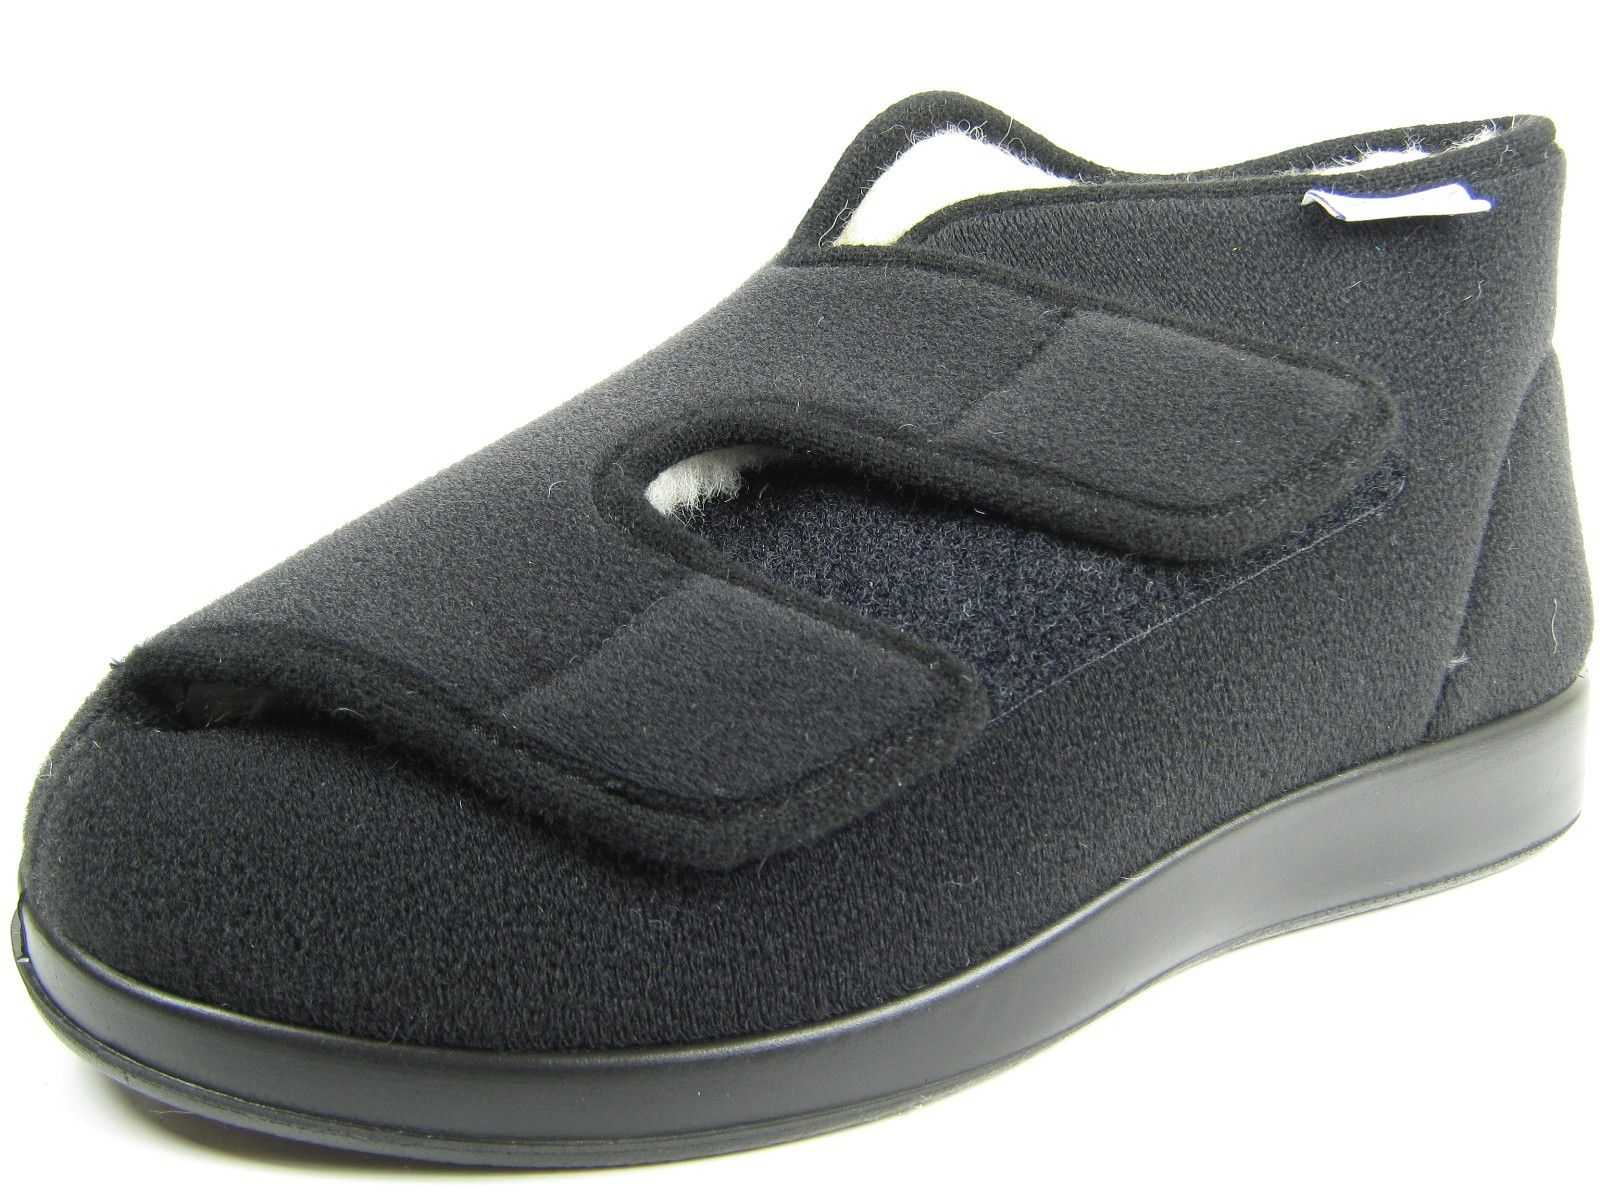 Schuh von Varomed, 38